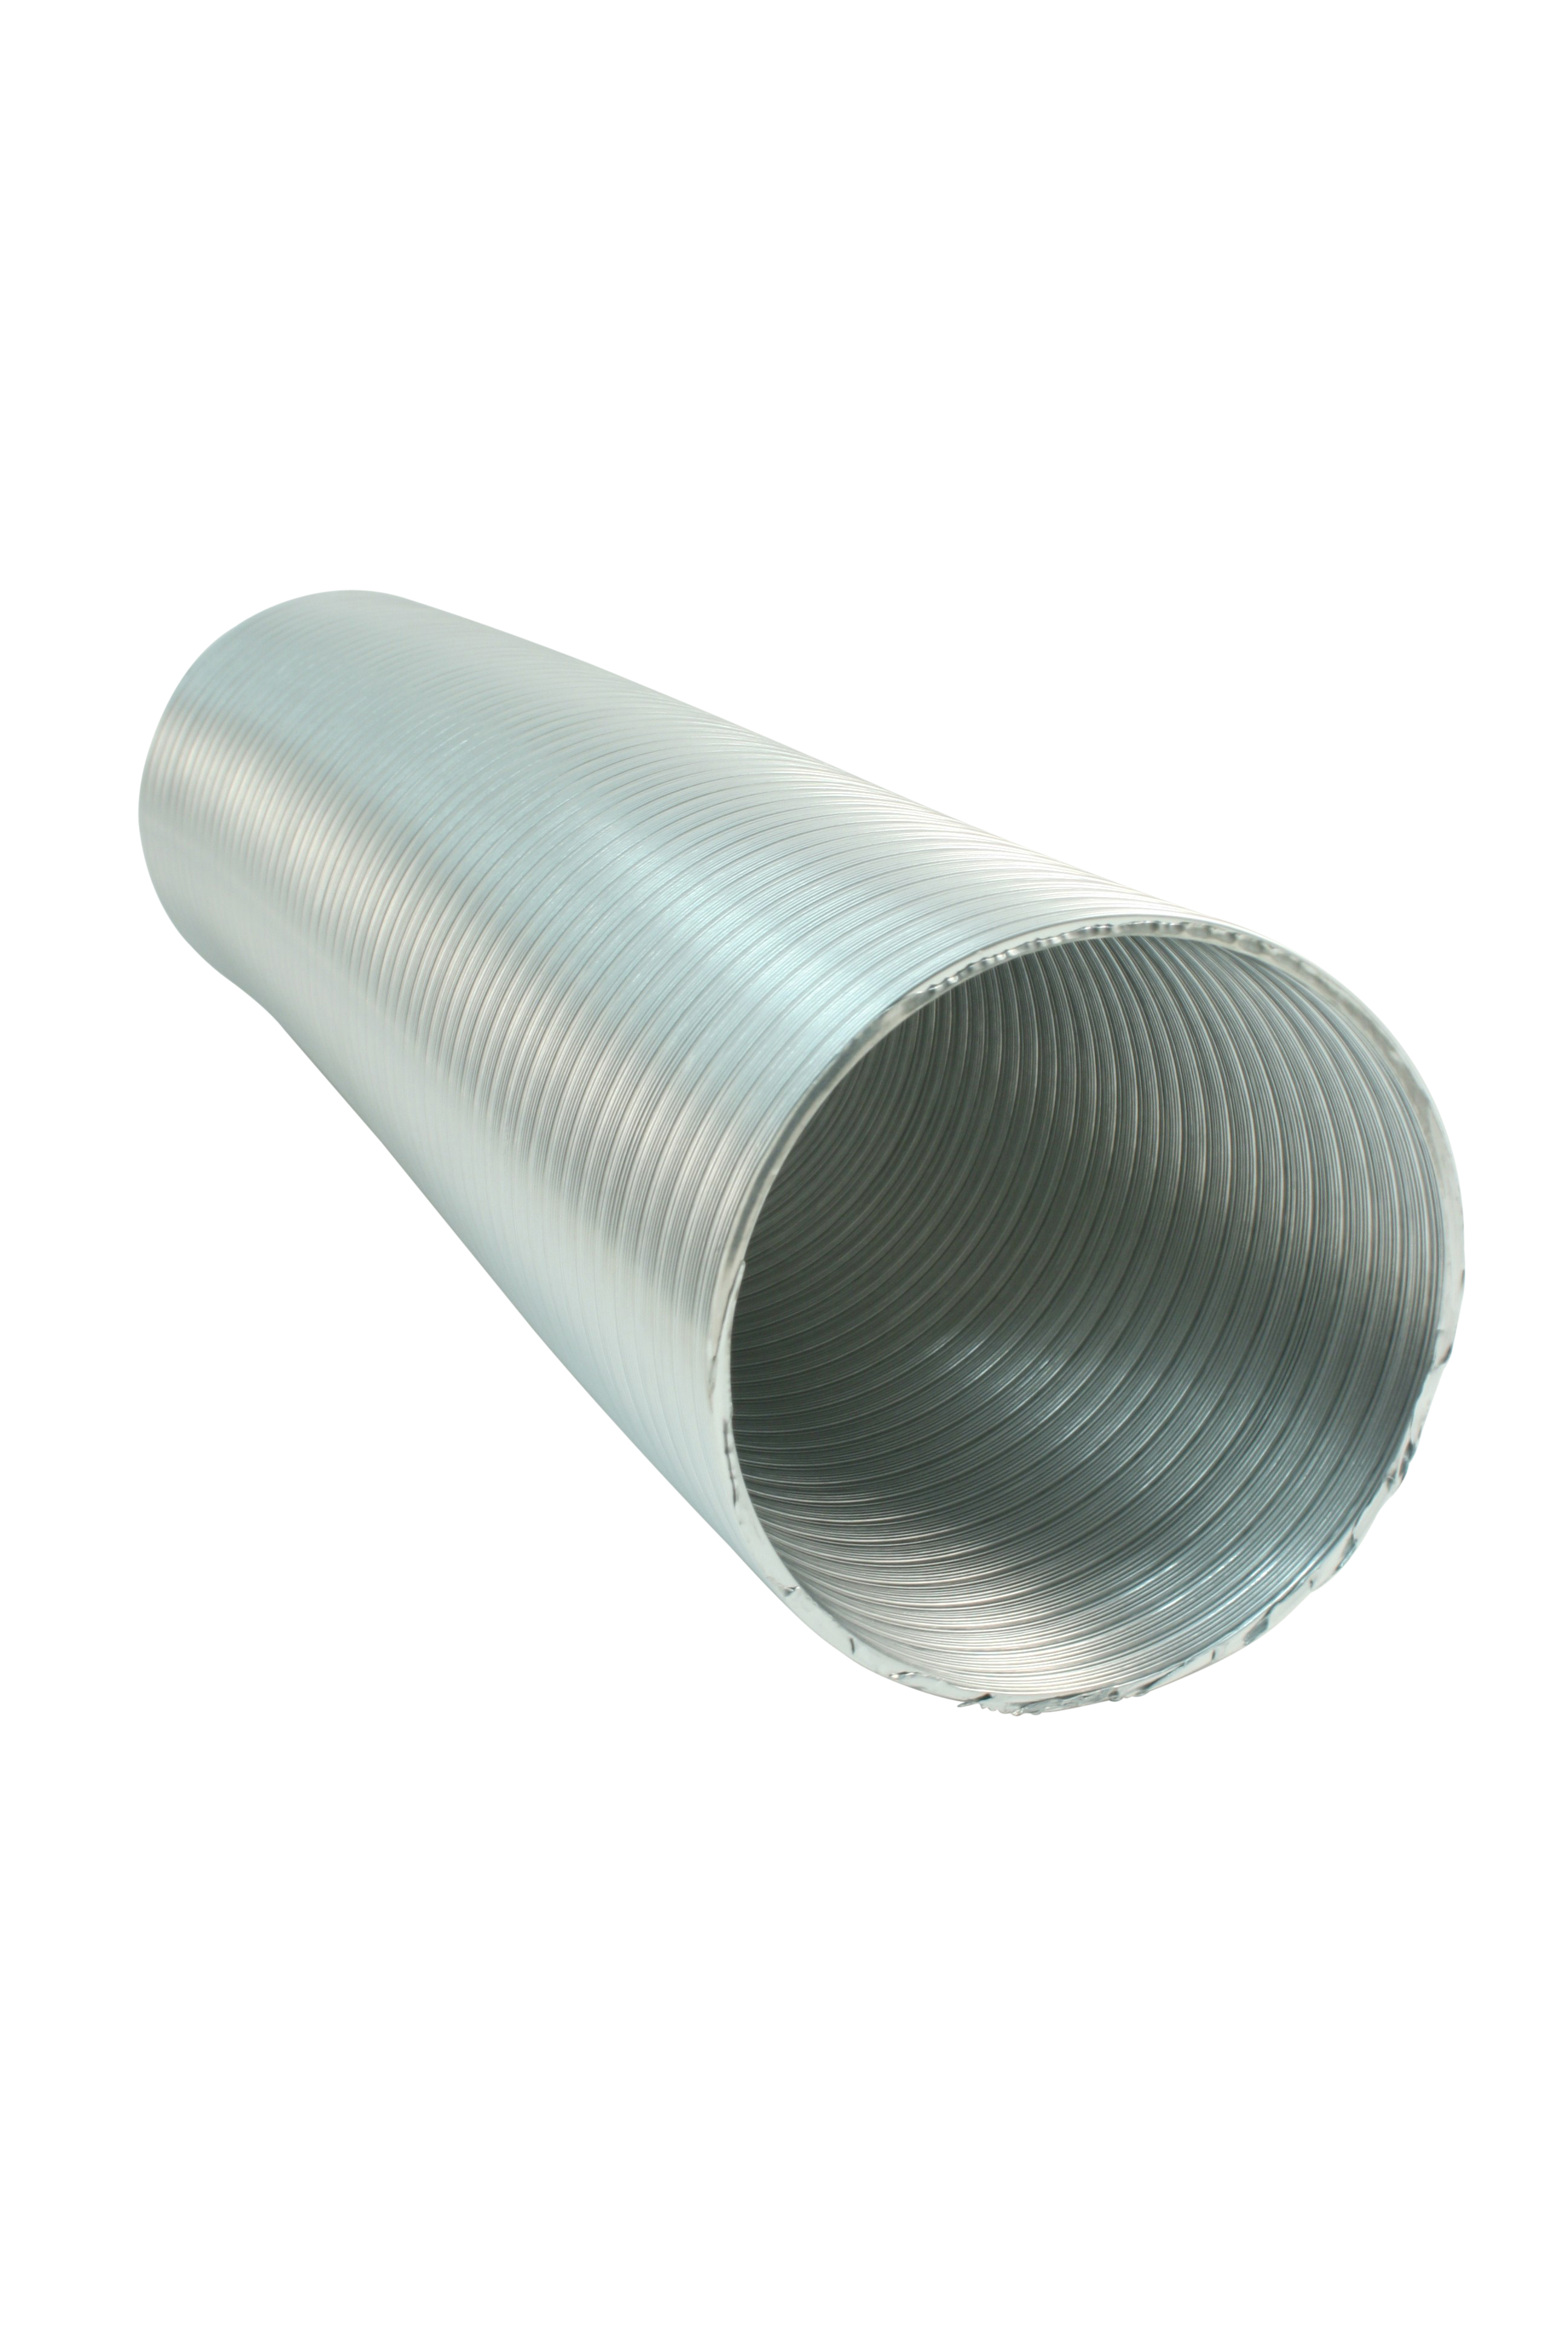 Marley Flexibles Lüftungsrohr aus Aluminium, Ø 150 mm, 200-1000 mm, Silber